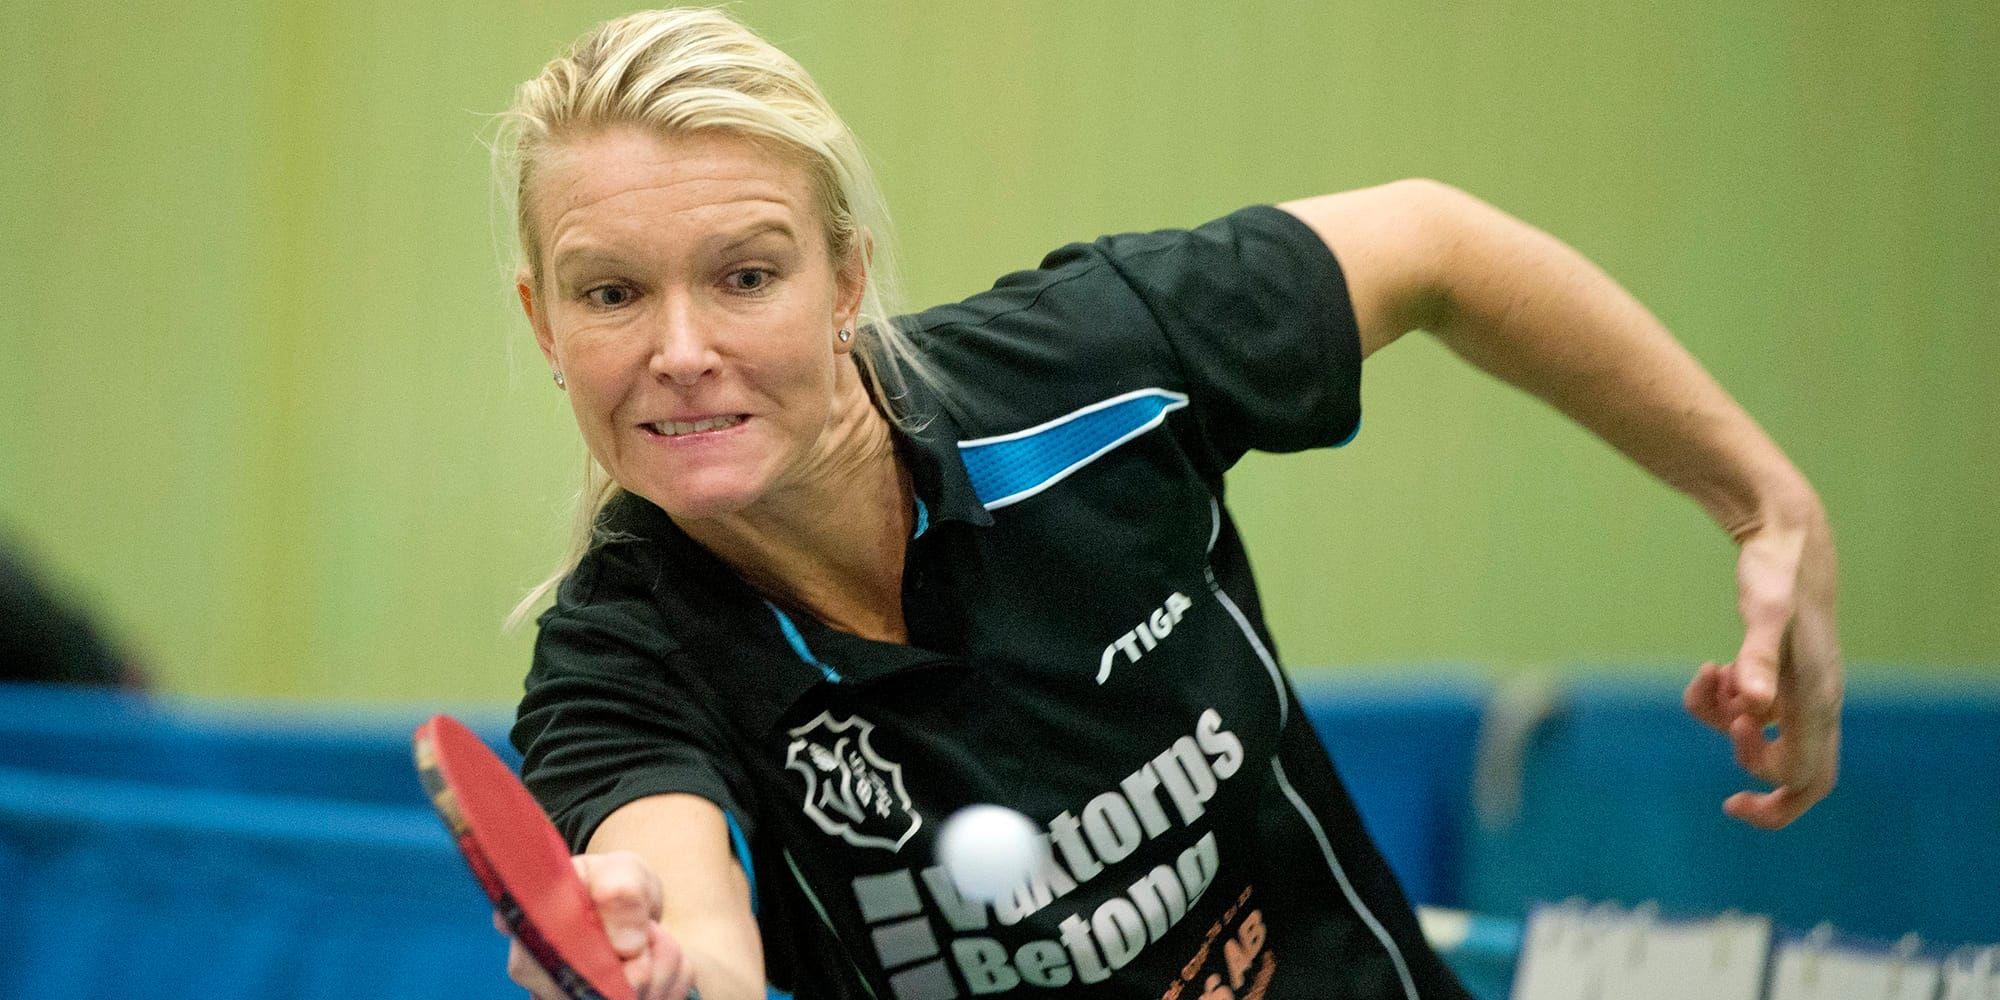 Osmak. Våxtorps veteran Sandra Andersson vann en femsetare, men förlorade två, borta mot Kättilsmåla/Lyckeby.